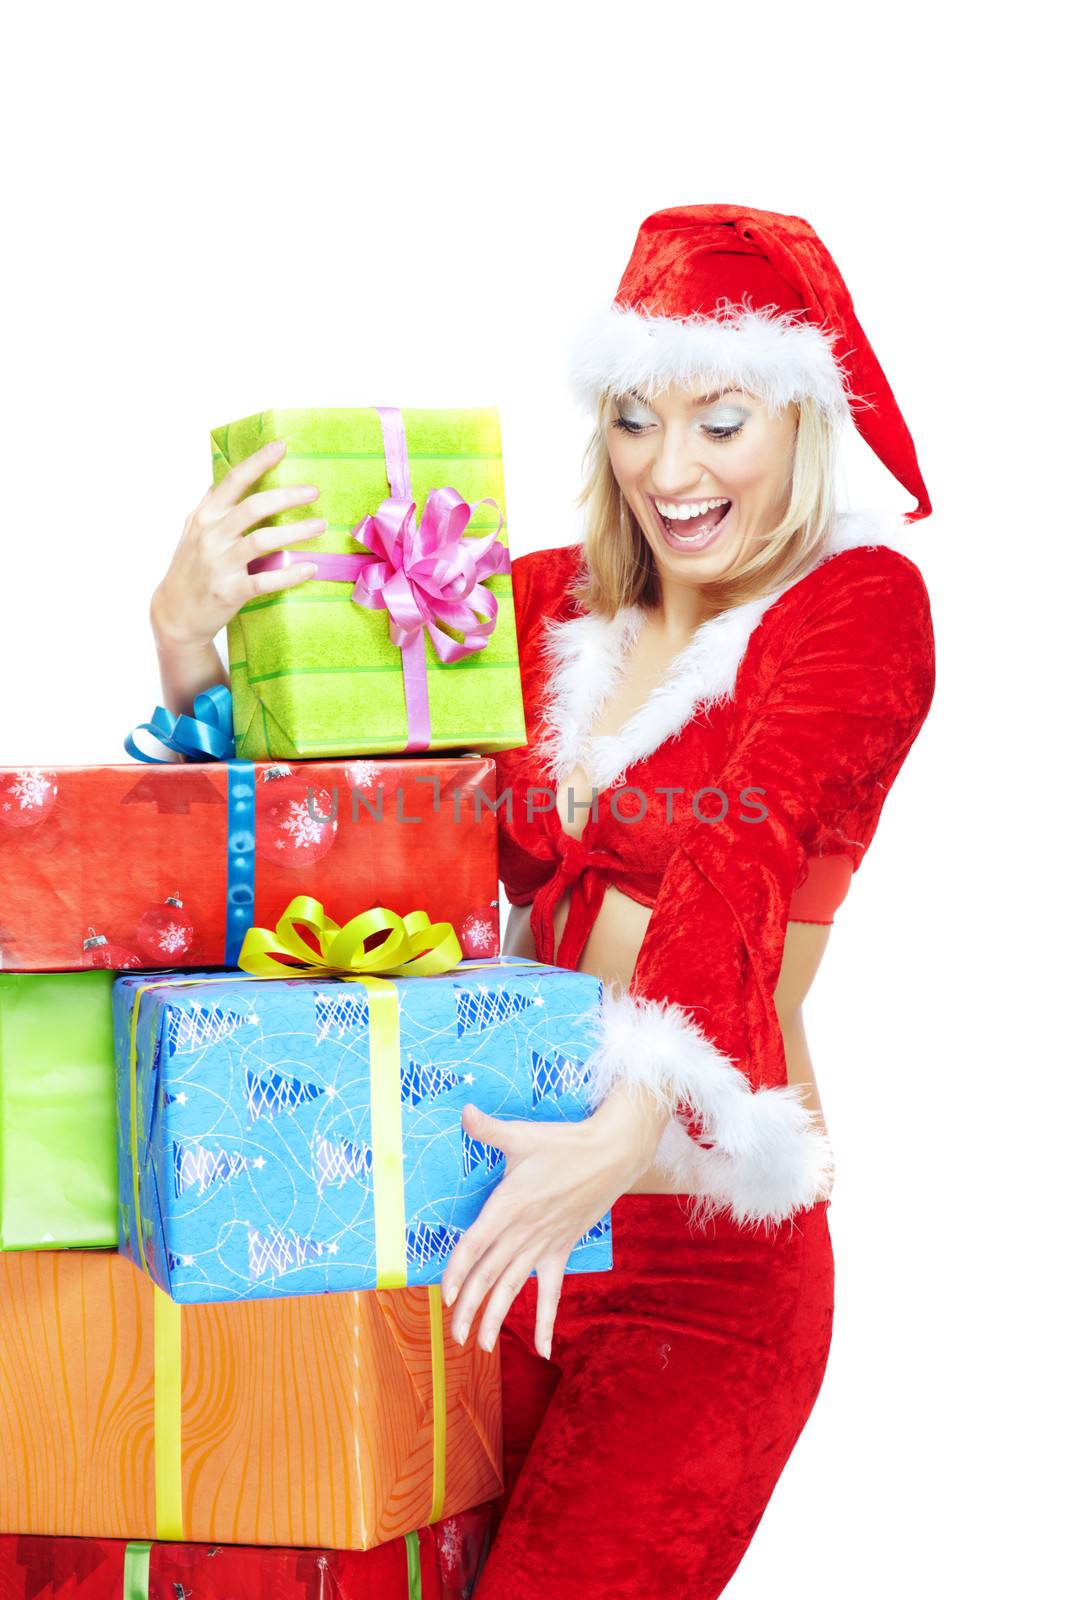 Santa and Christmas gifts by Novic